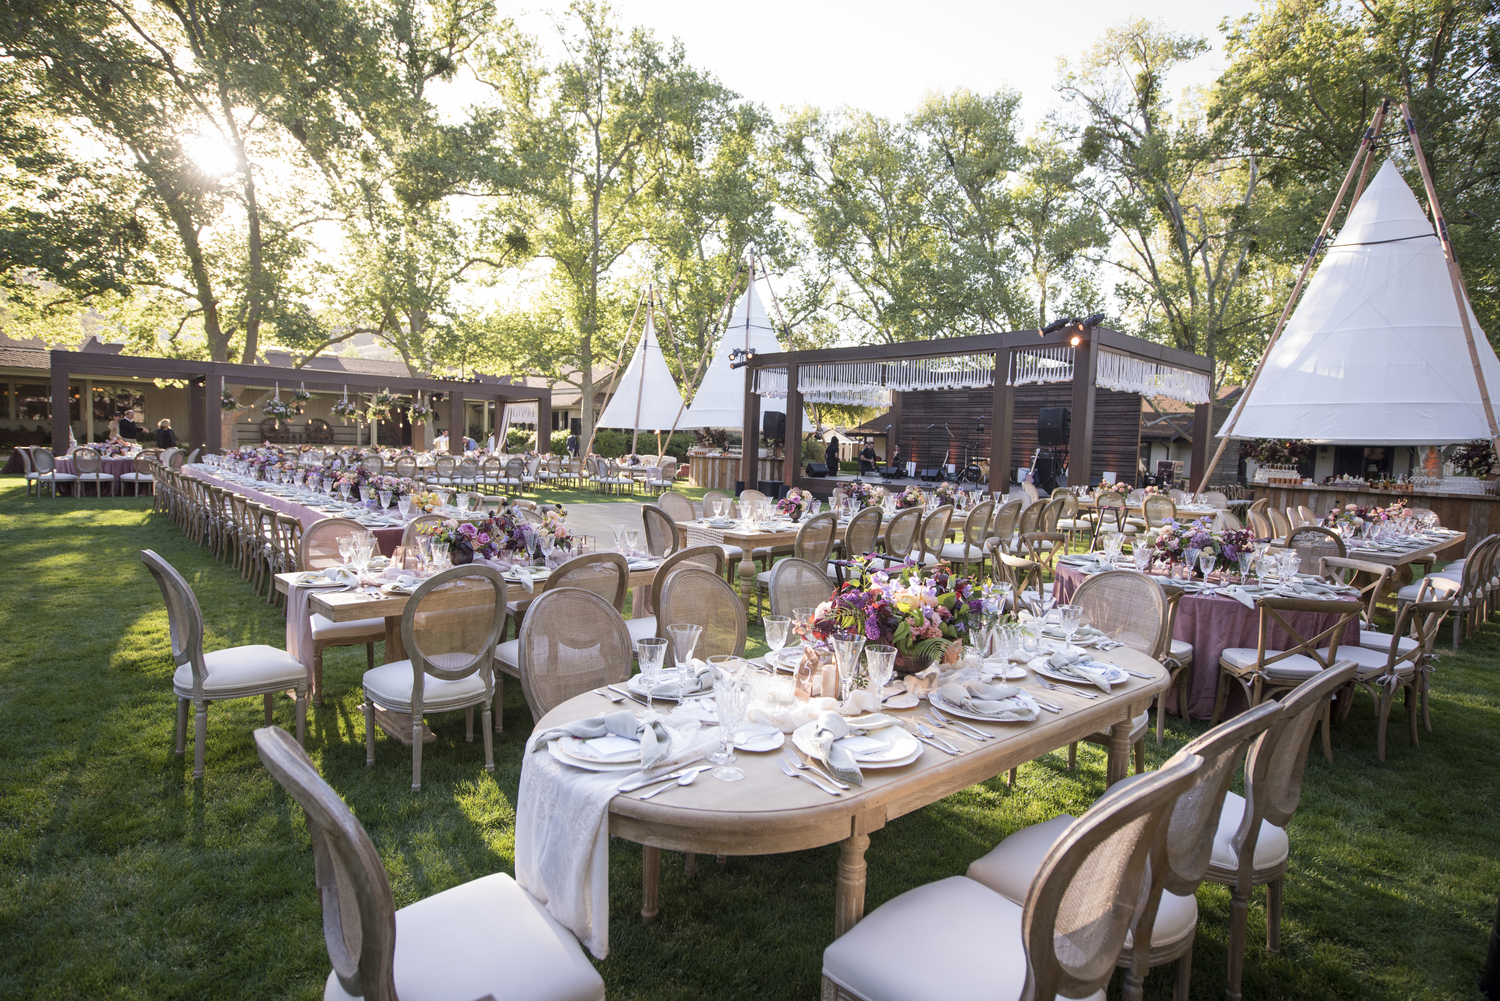 Grassy Oval Lawn Wedding Reception